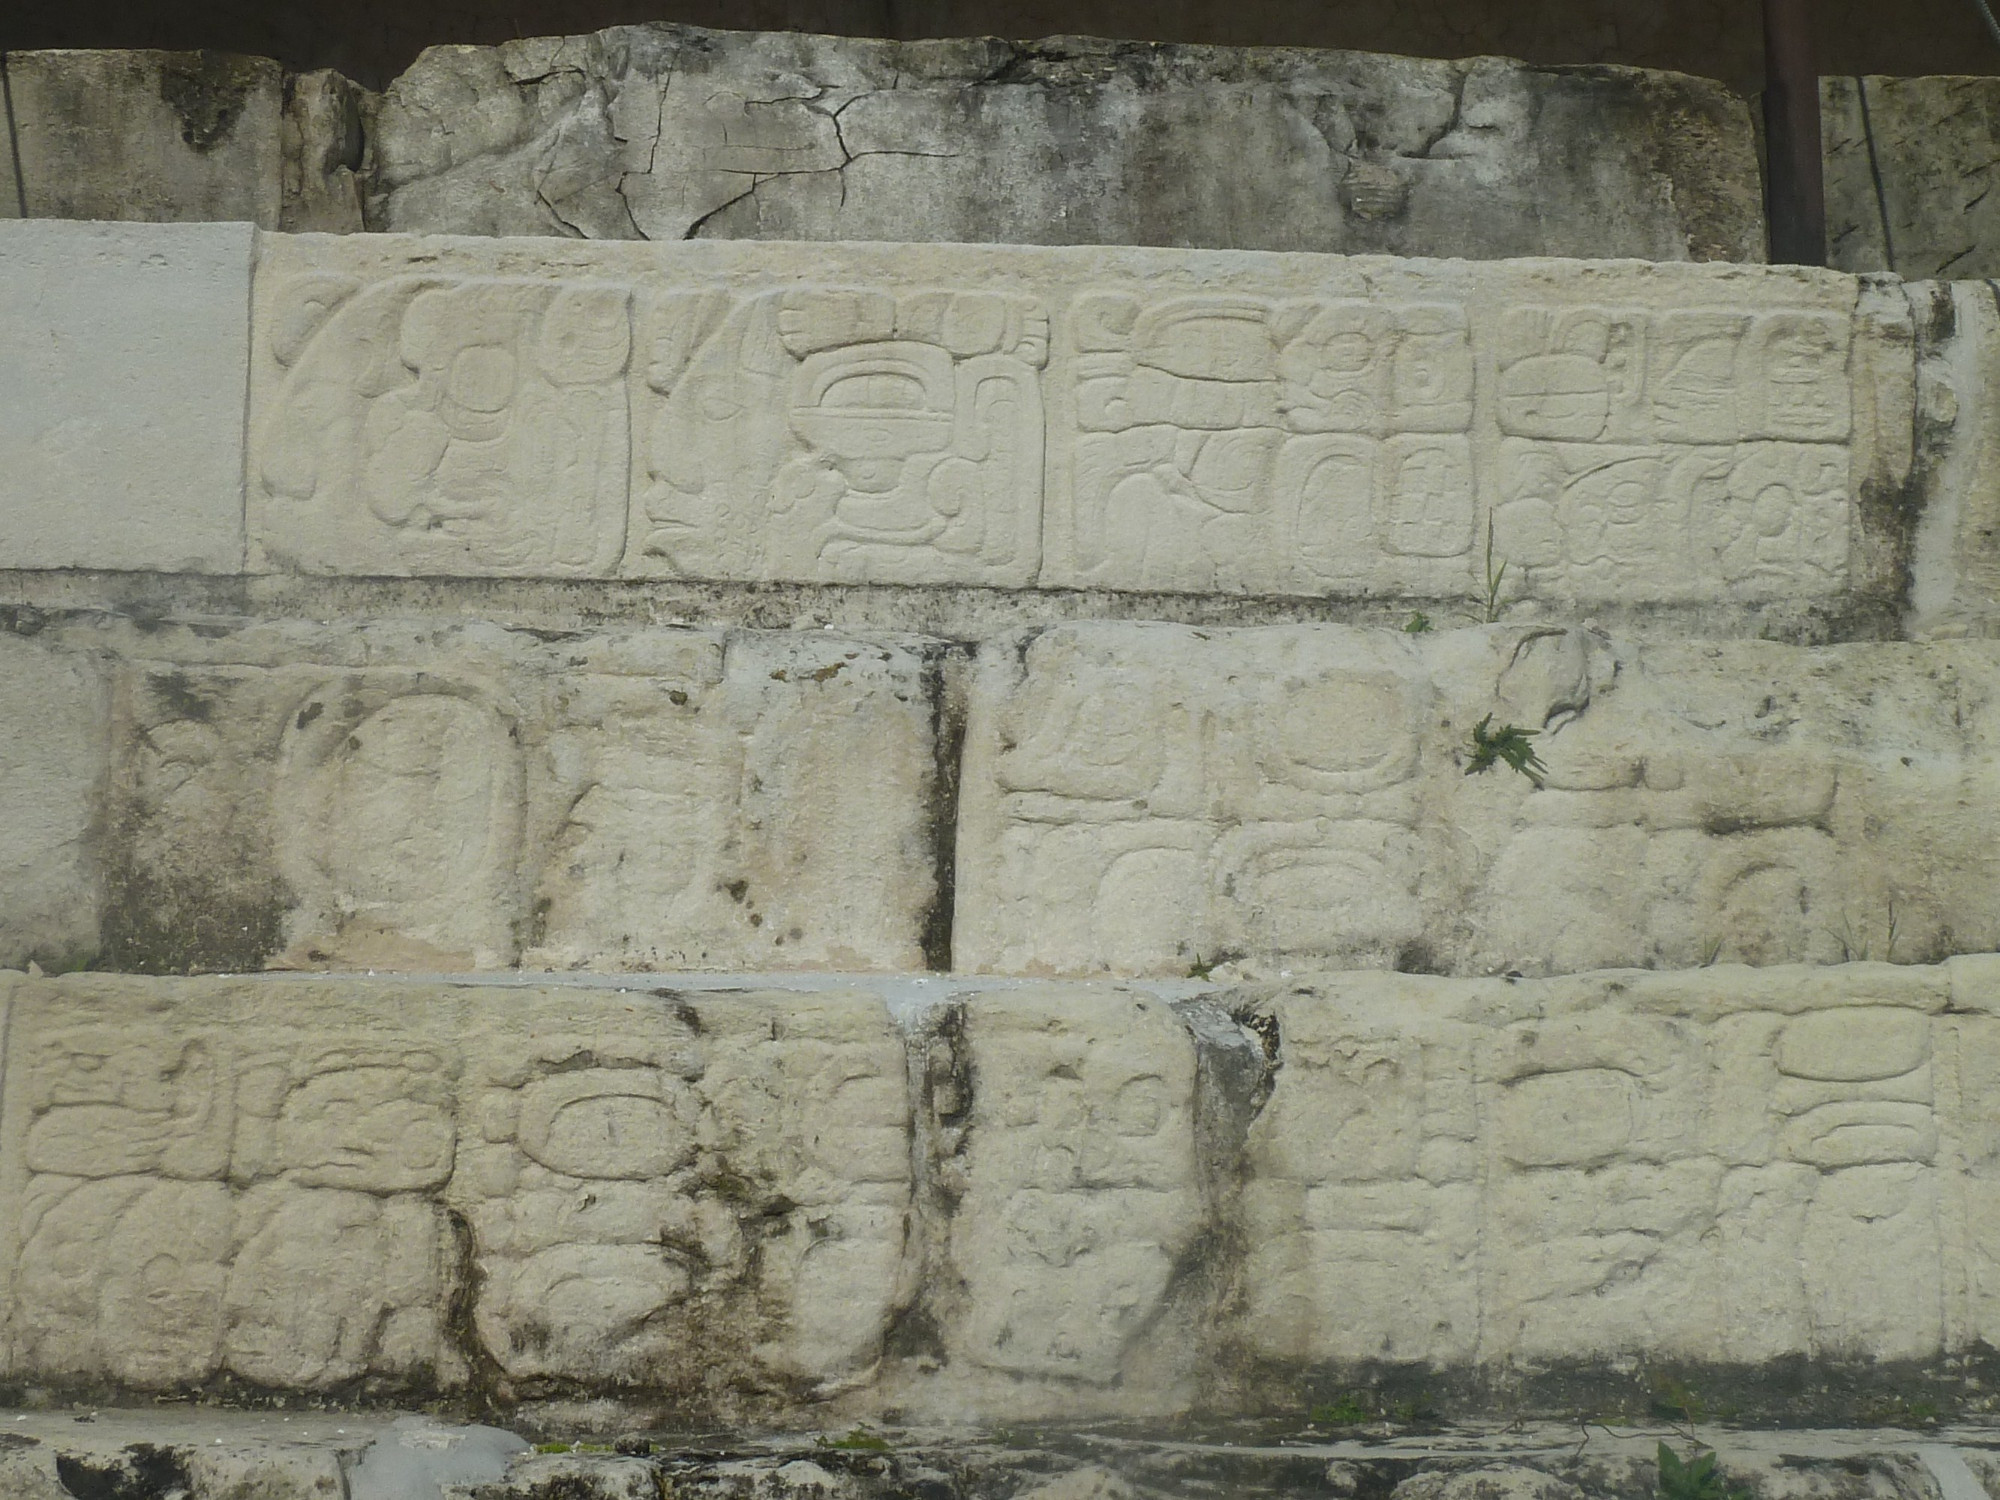 Carved Glyphs on steps